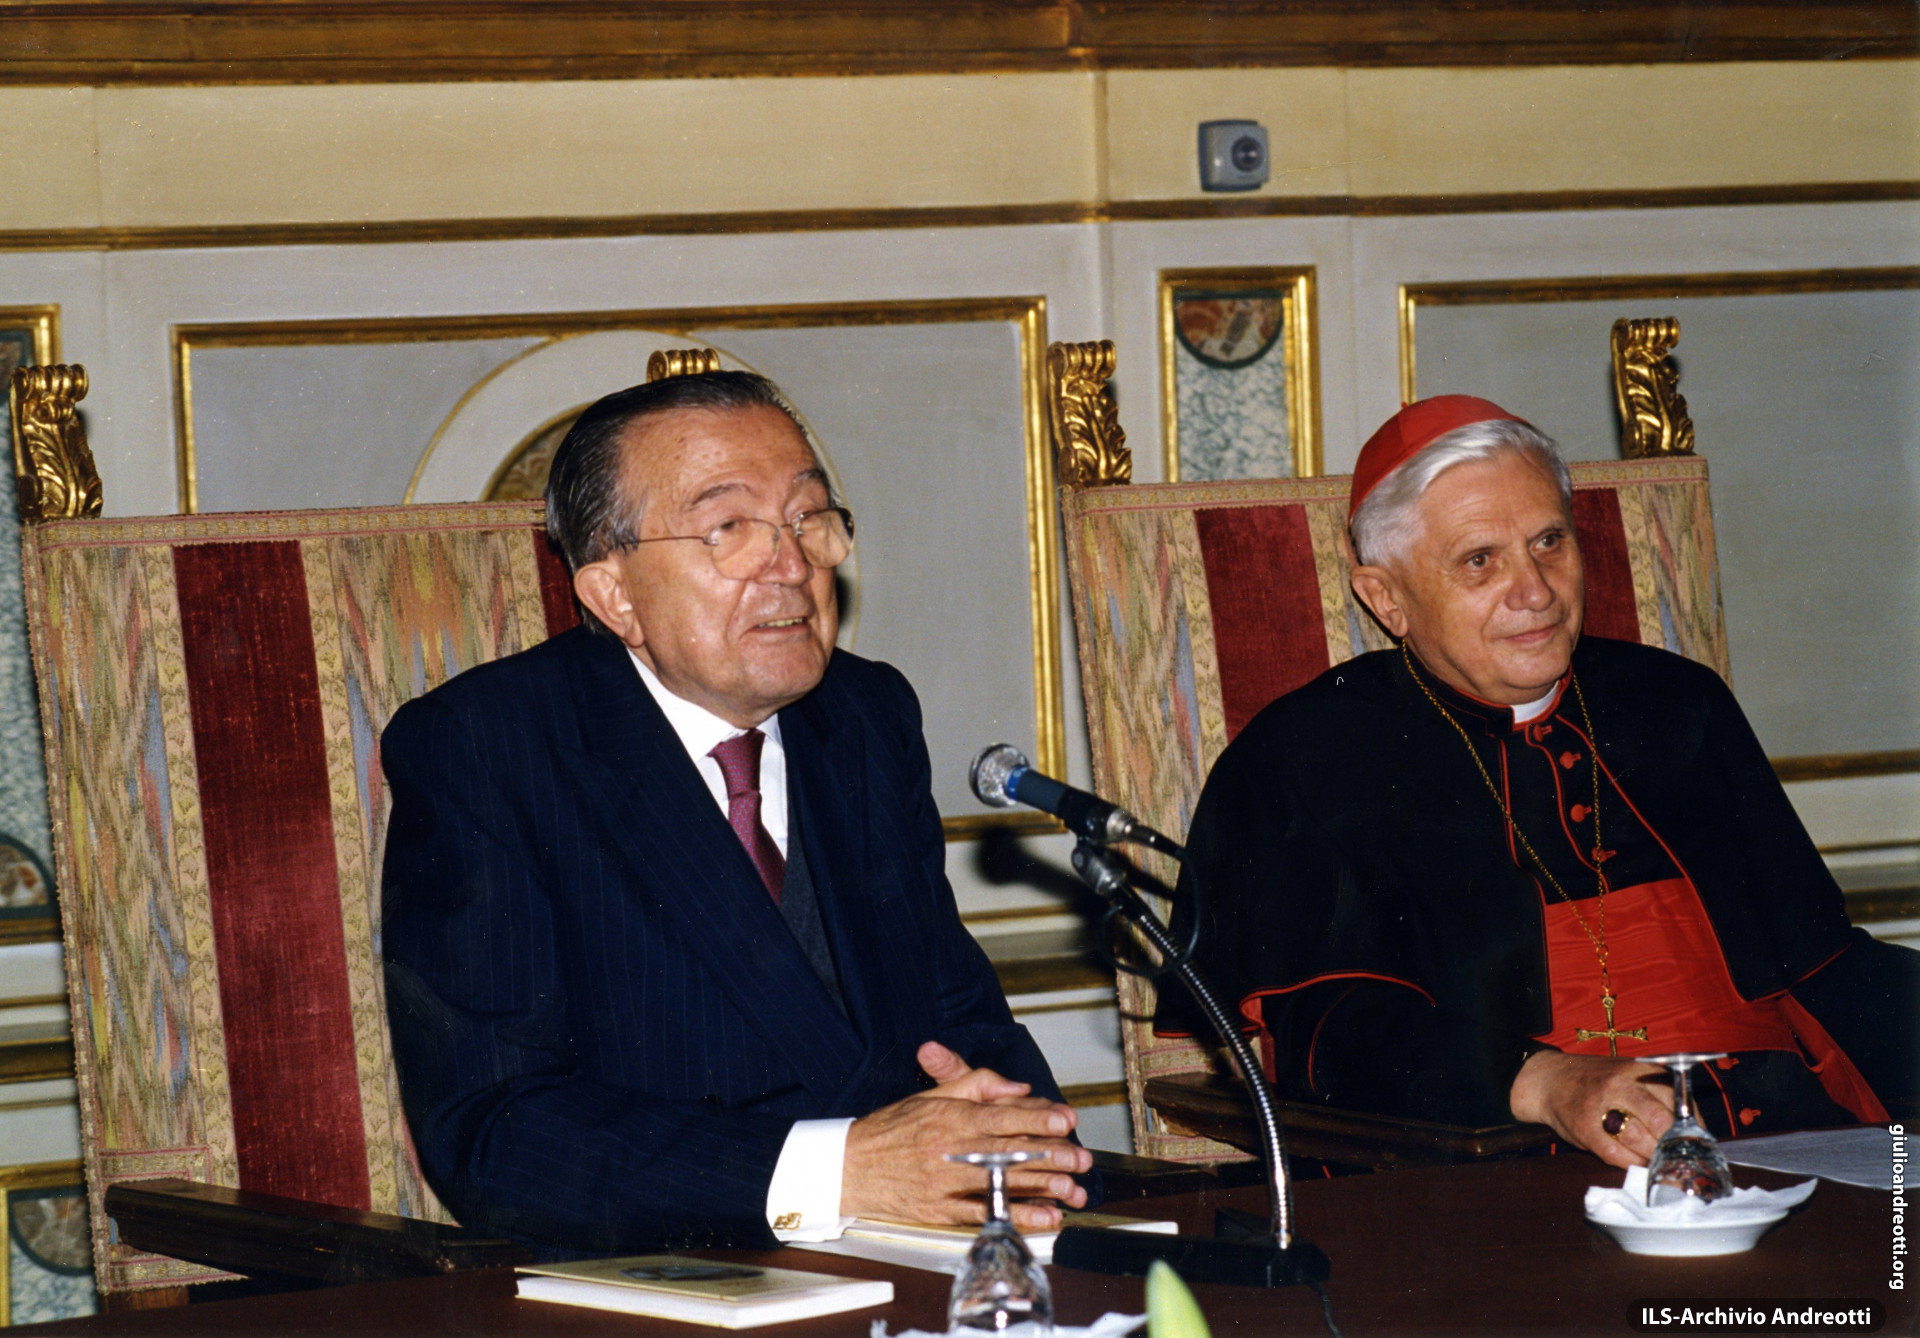 21 settembre 1998. Andreotti con il Cardinale Ratzinger alla presentazione del libro 'Il potere e la Grazia. Attualità di Sant'Agostino' nella Sala del Cenacolo.